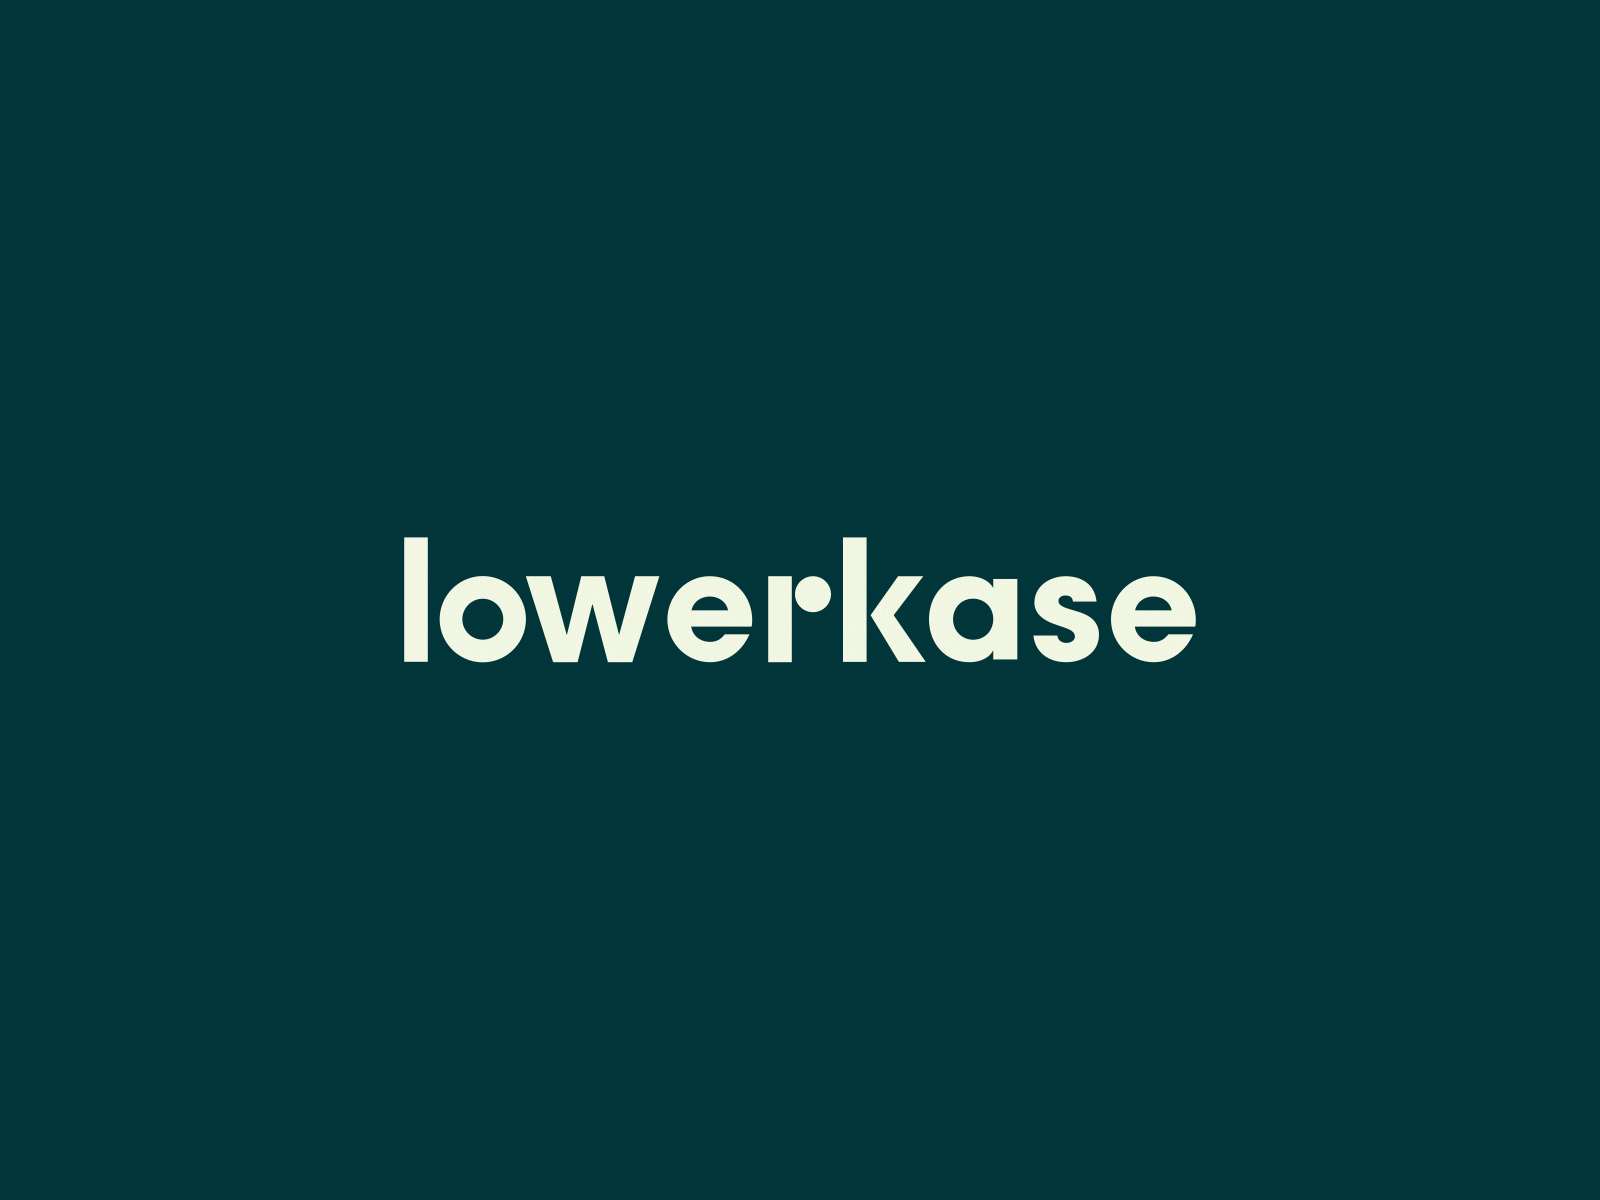 Lowerkase brand design brand identity branding branding and identity contemporary design resources green logo logo design lowerkase minimal orange startup